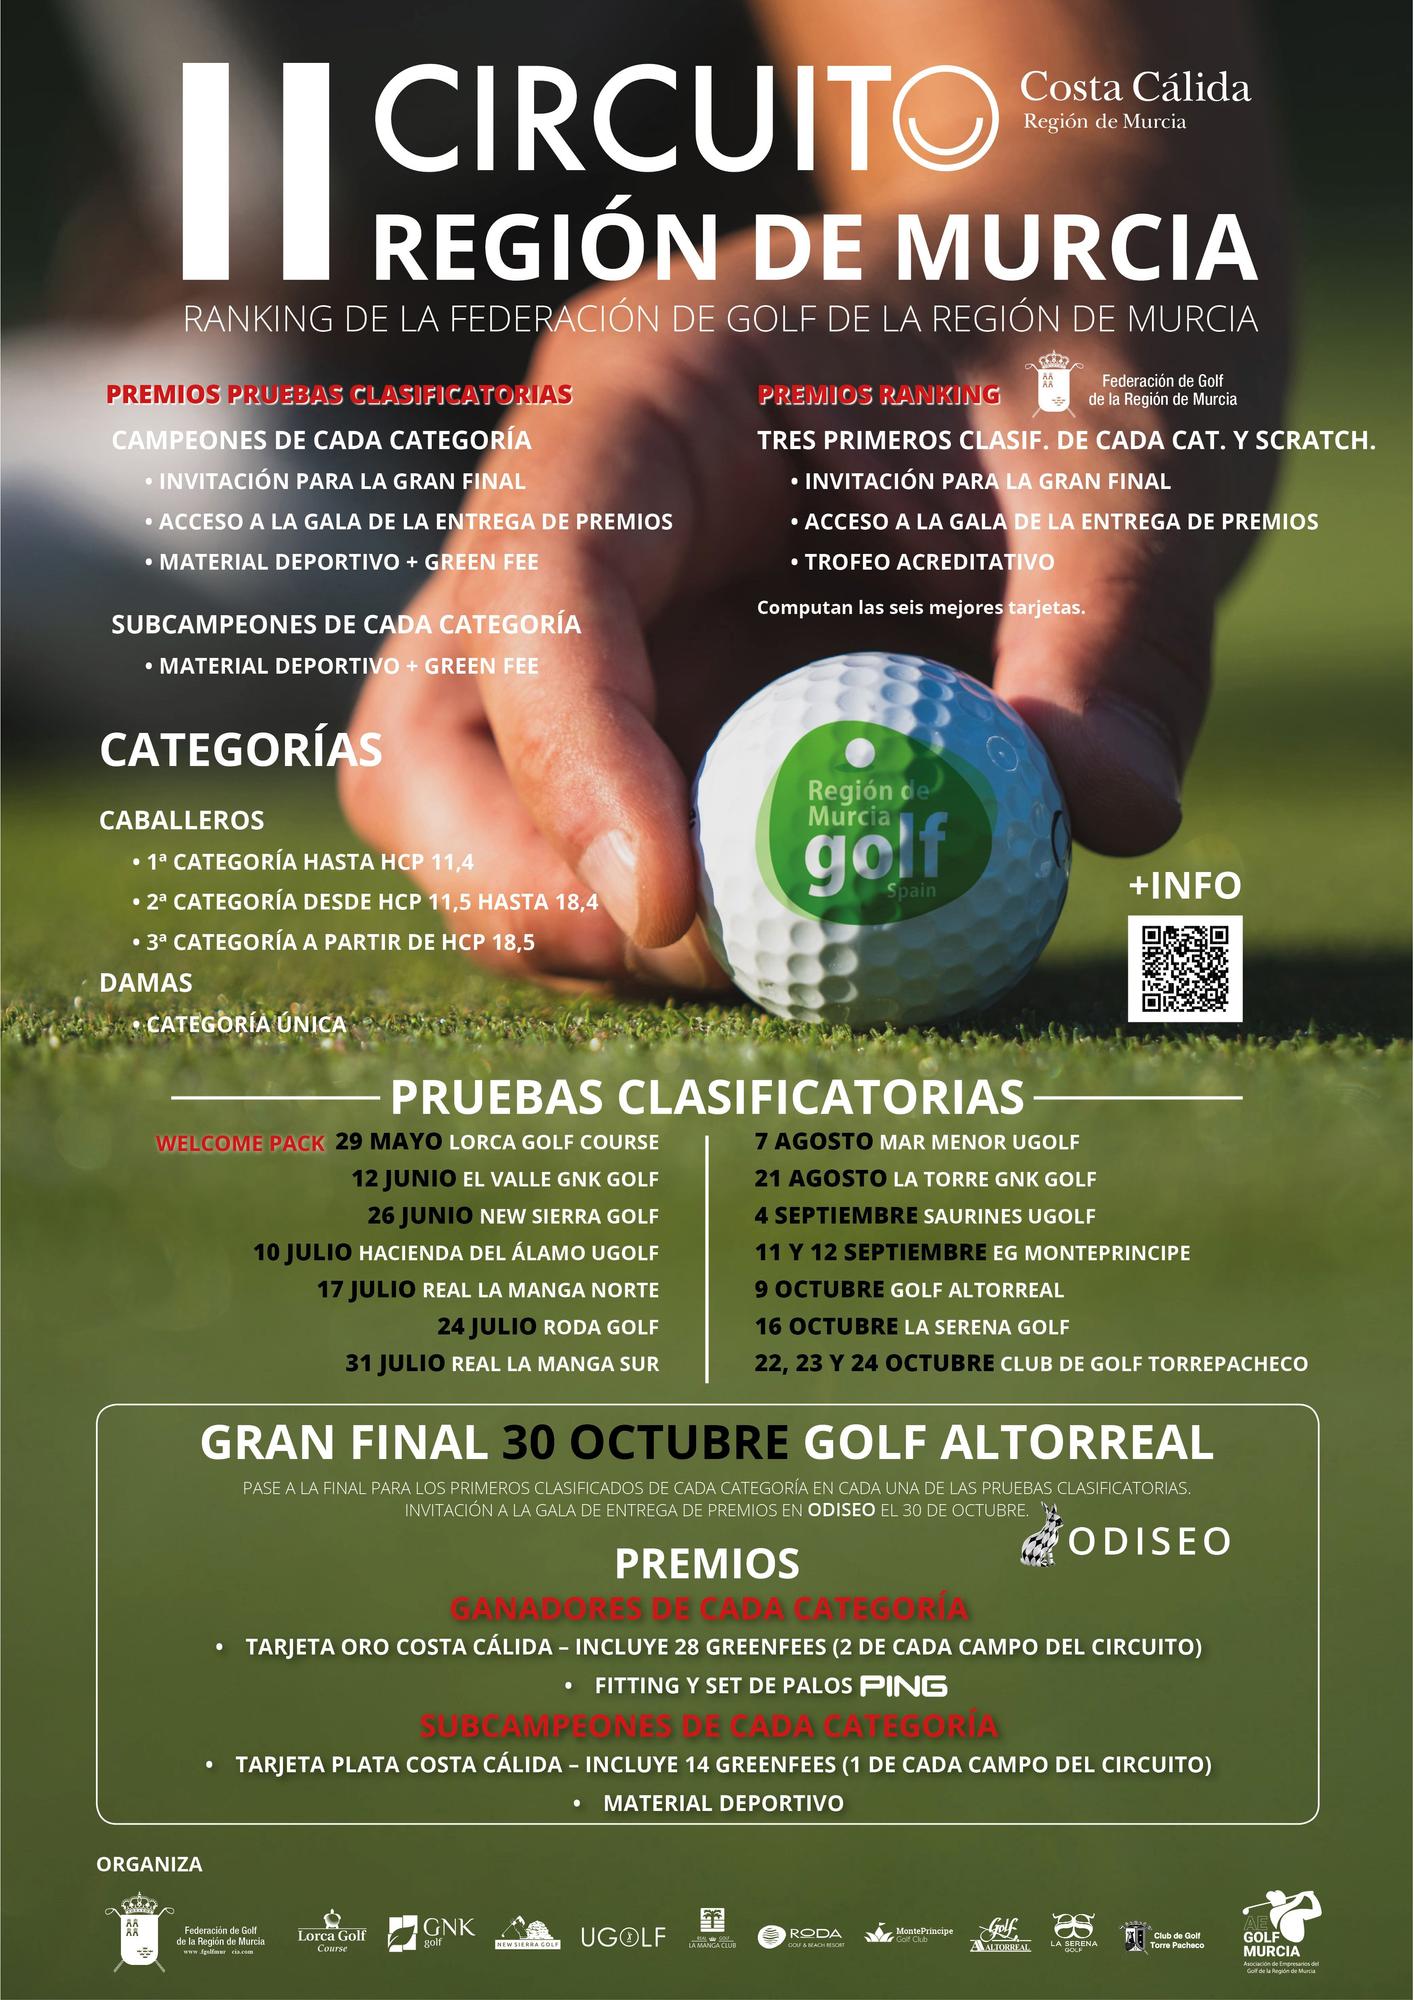 Cartel anunciador del II Circuito de golf.